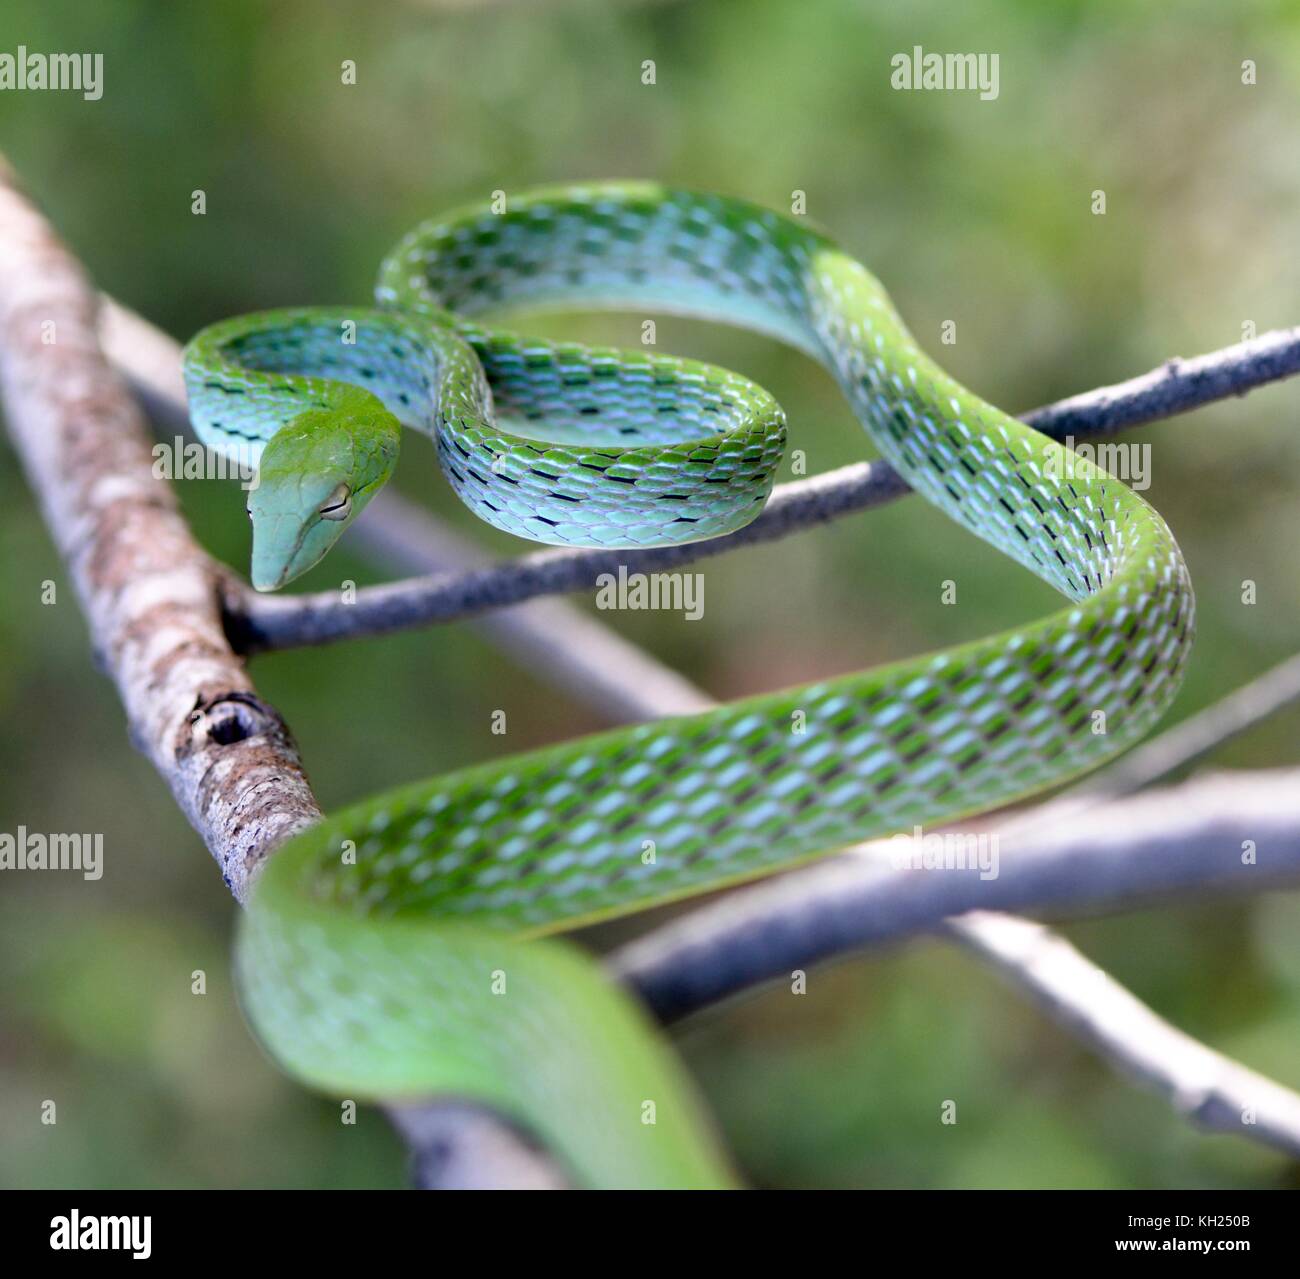 Serpent de vigne verte dans une attitude de défense Banque D'Images